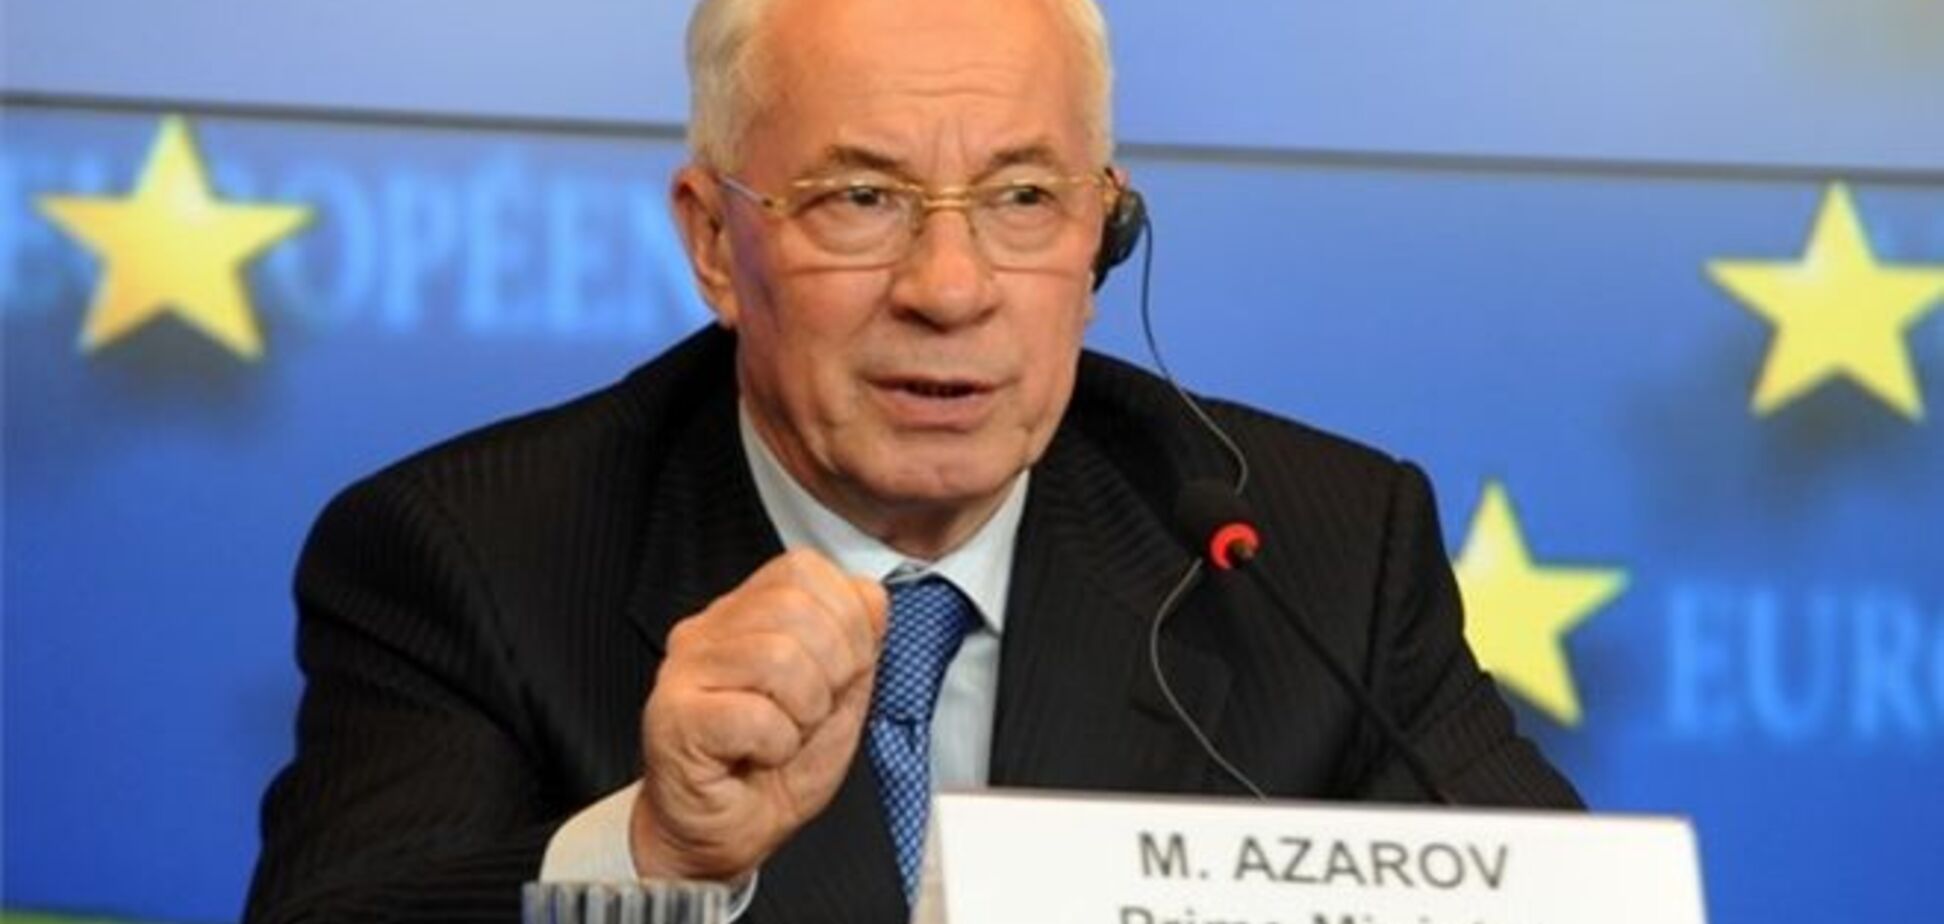 Соглашение об ассоциации принесет масштабные изменения - Азаров